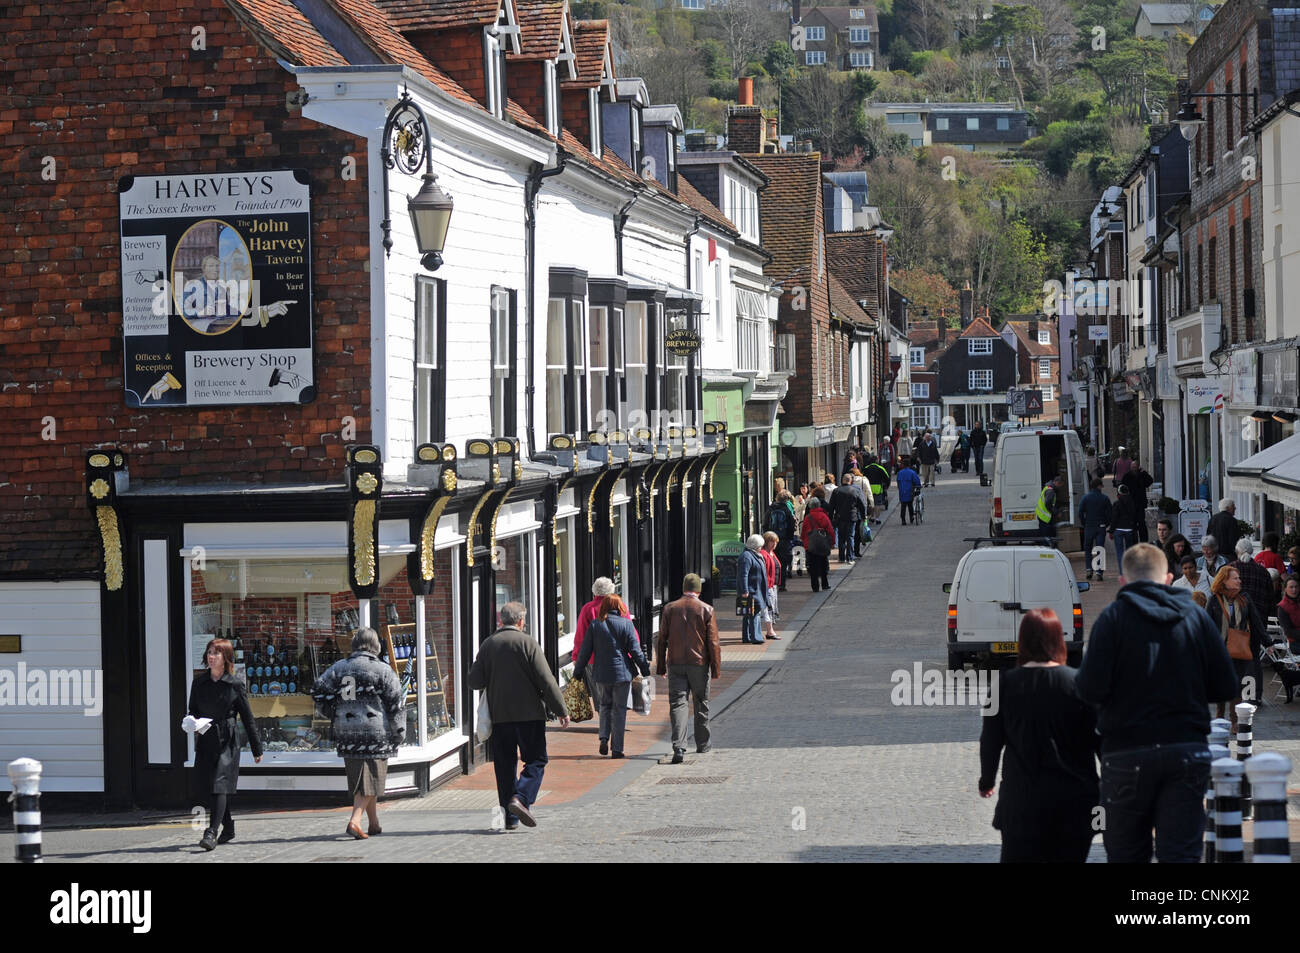 Le centre-ville de Lewes, East Sussex UK - Grande rue Cliffe avec la célèbre brasserie harveys shop sur la gauche Banque D'Images